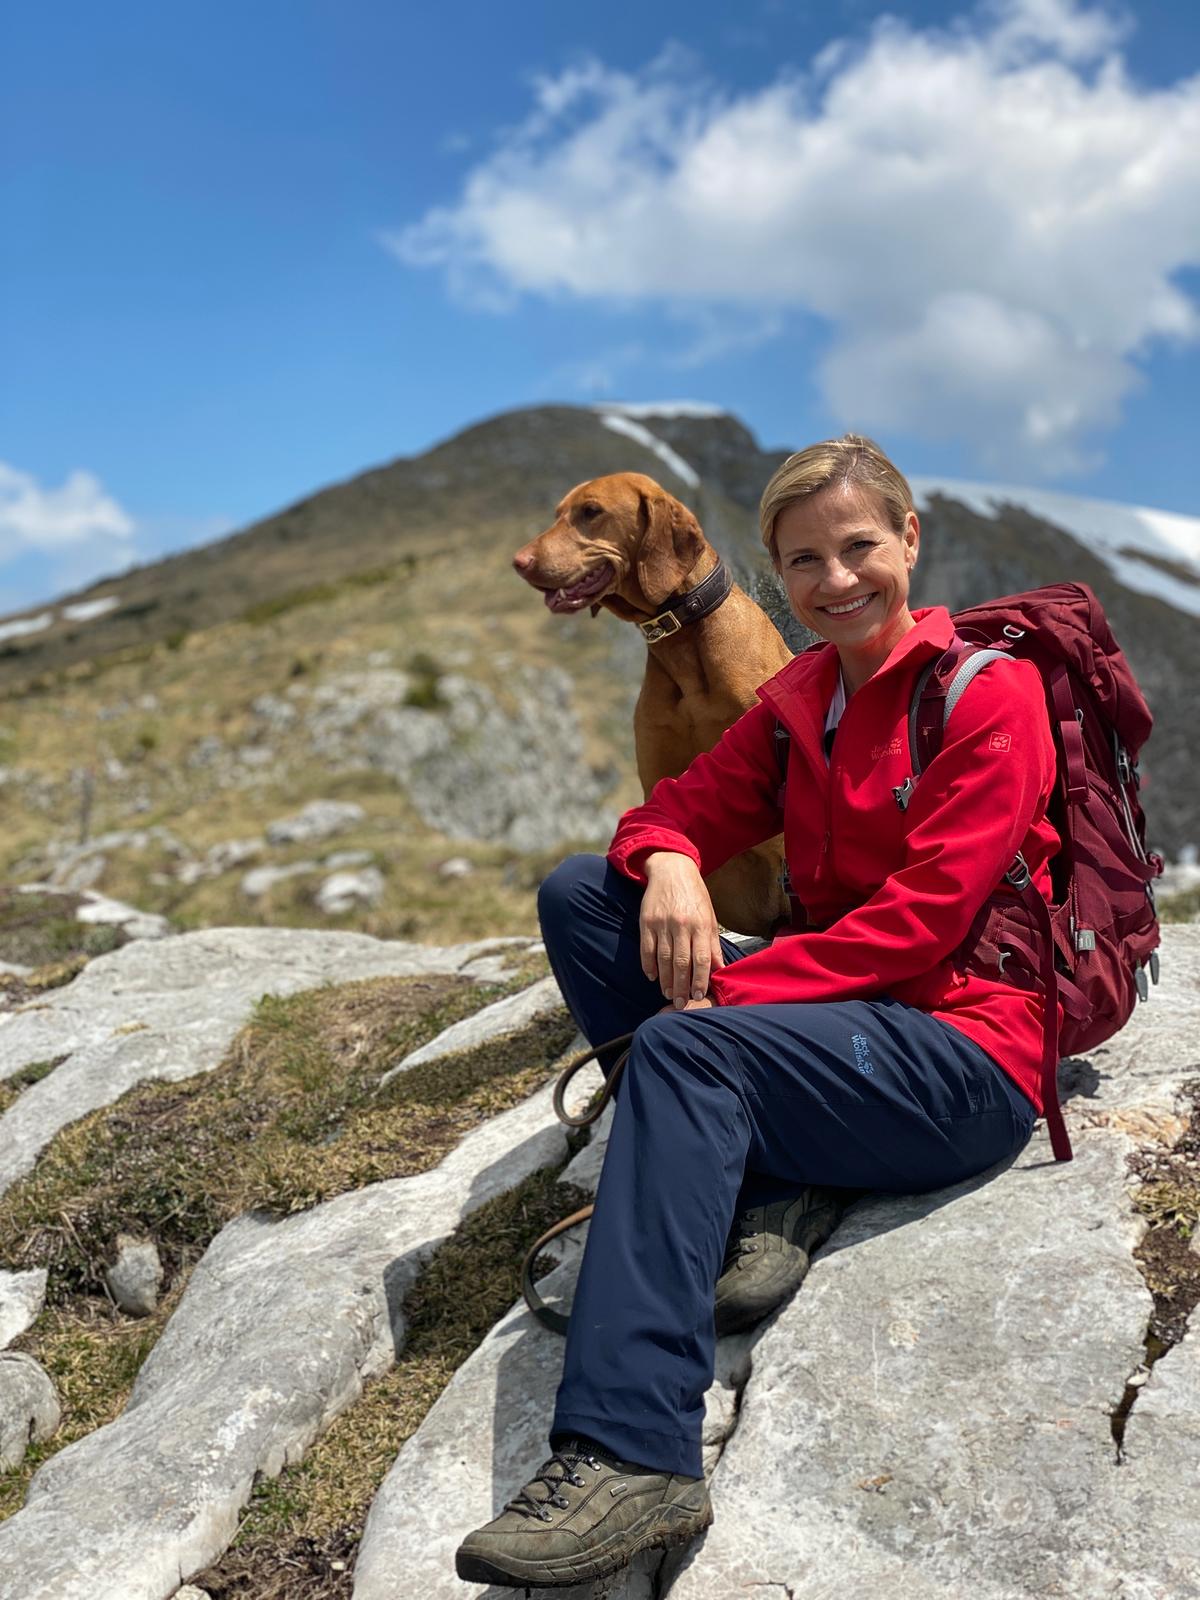 Kristina Sprenger -  mit Hund - sitz auf einem Stein. Sie hat einen roten Rucksack umgehängt und lächelt.